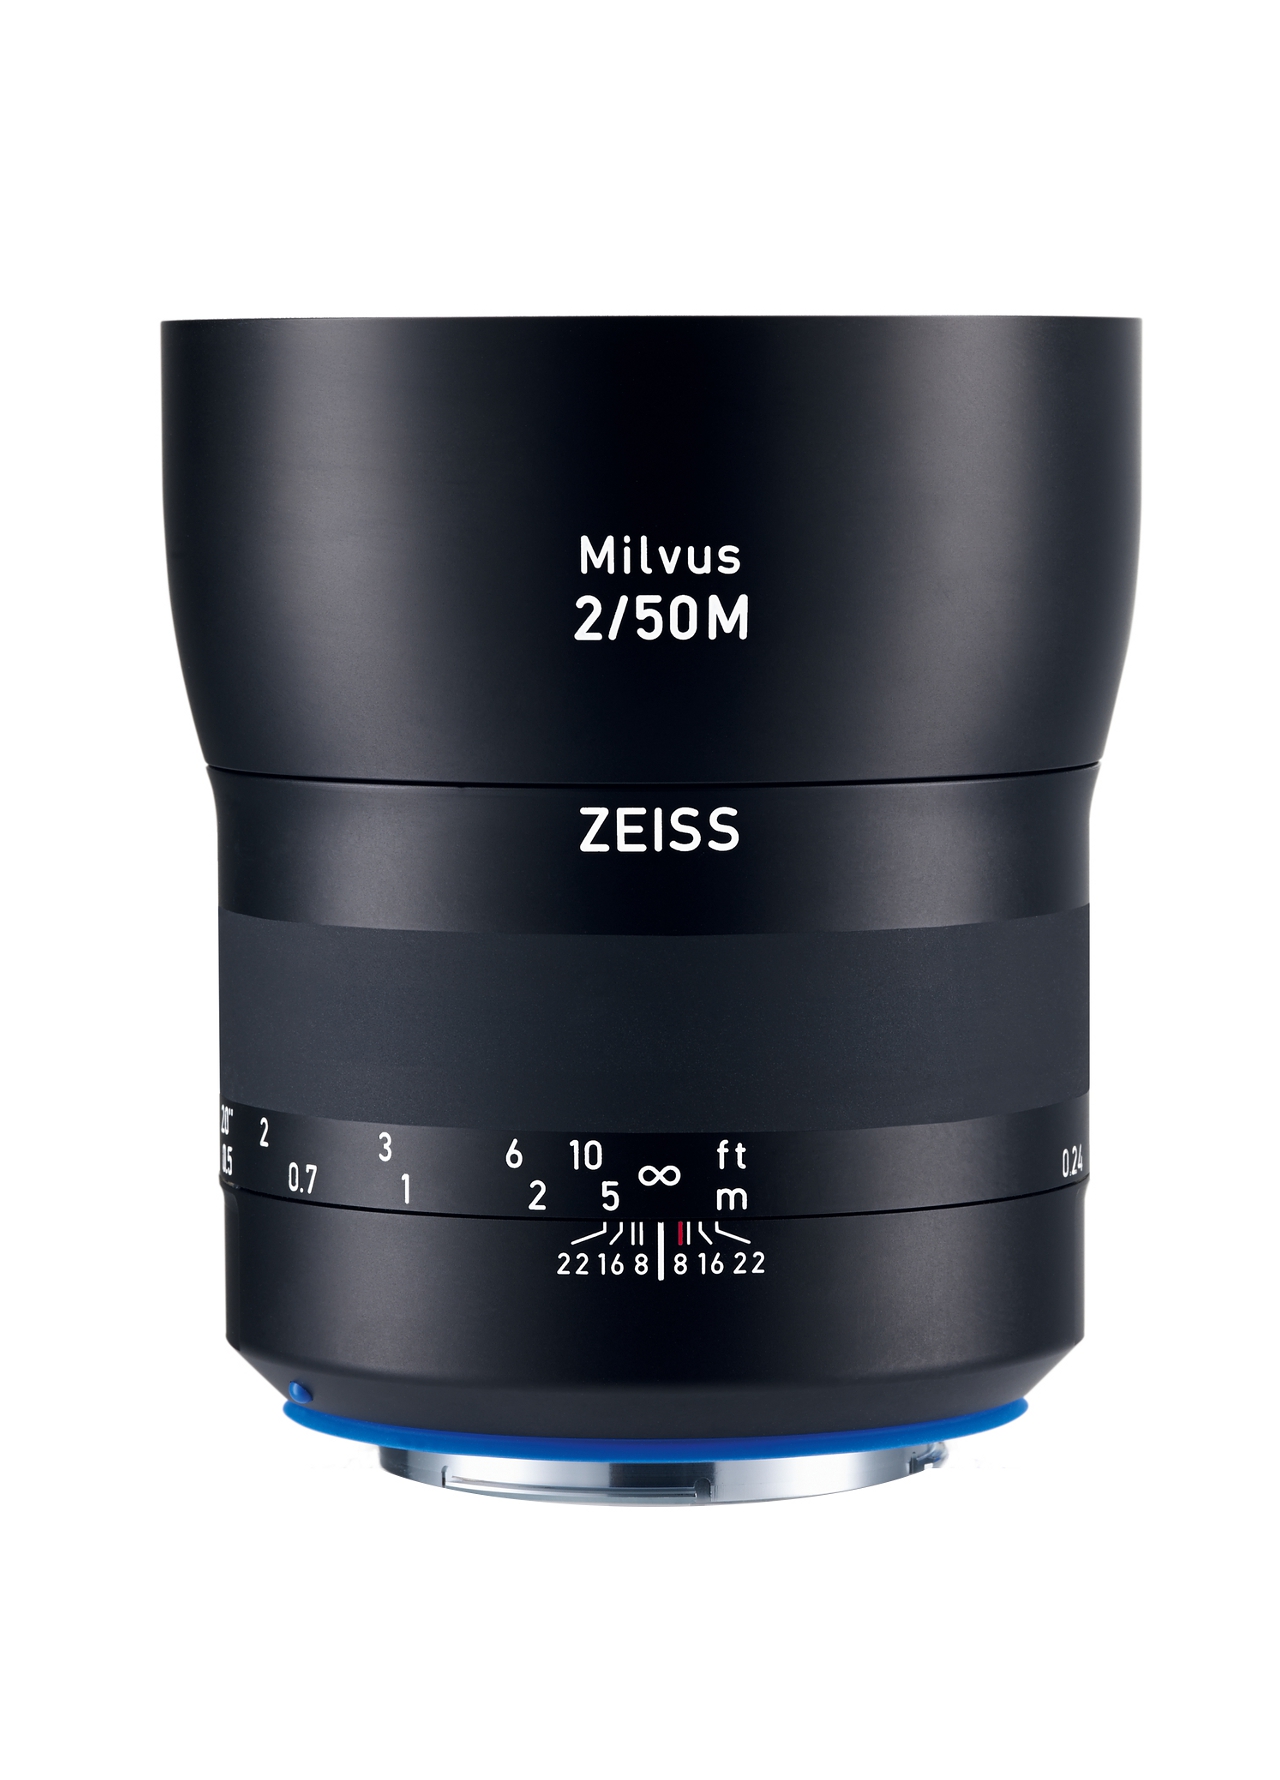 ZEISS Milvus 2/50M | Canon & Nikon デジタル一眼レフカメラ用